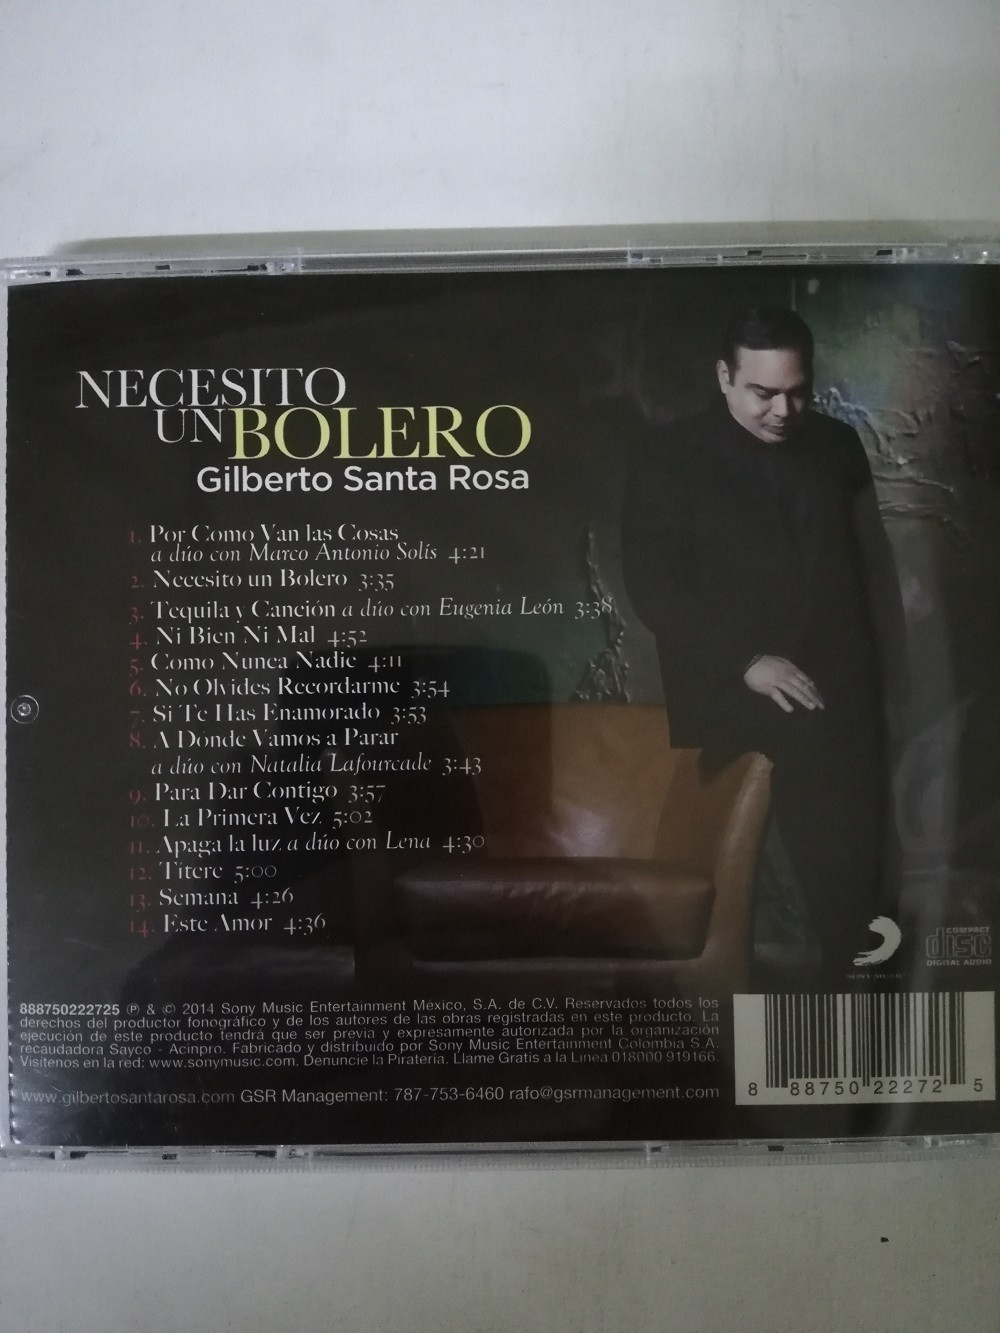 Imagen CD GILBERTO SANTA ROSA - NECESITO UN BOLERO 2